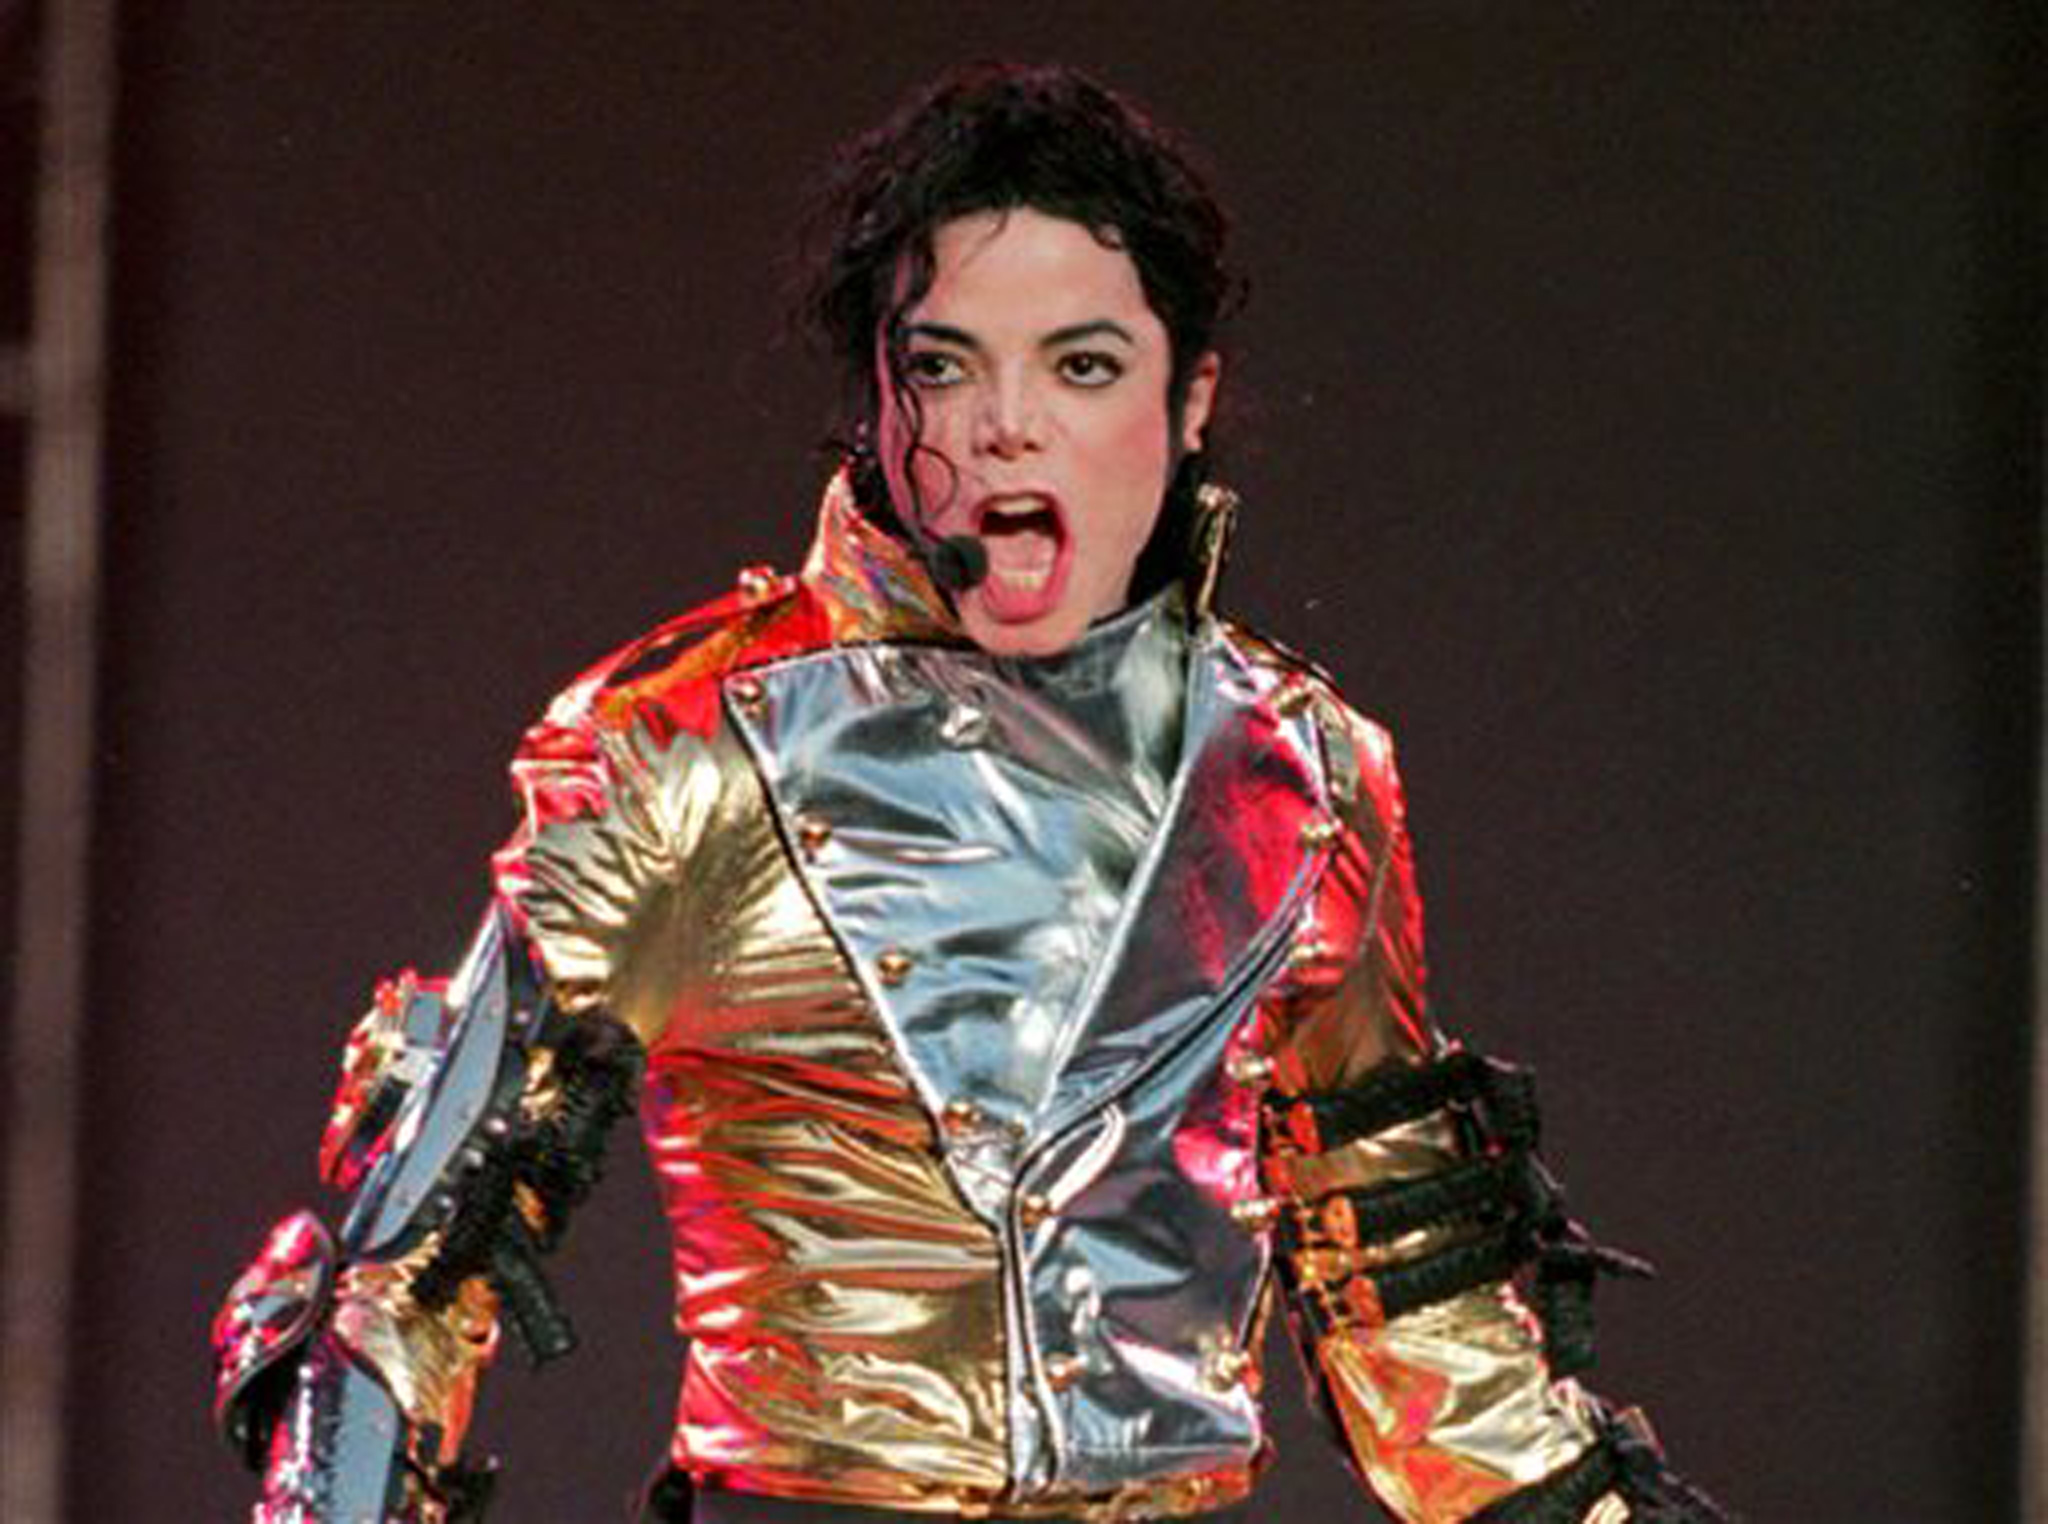 Michael Jackson's Best Live Performances Reaction!! Top Entertainment